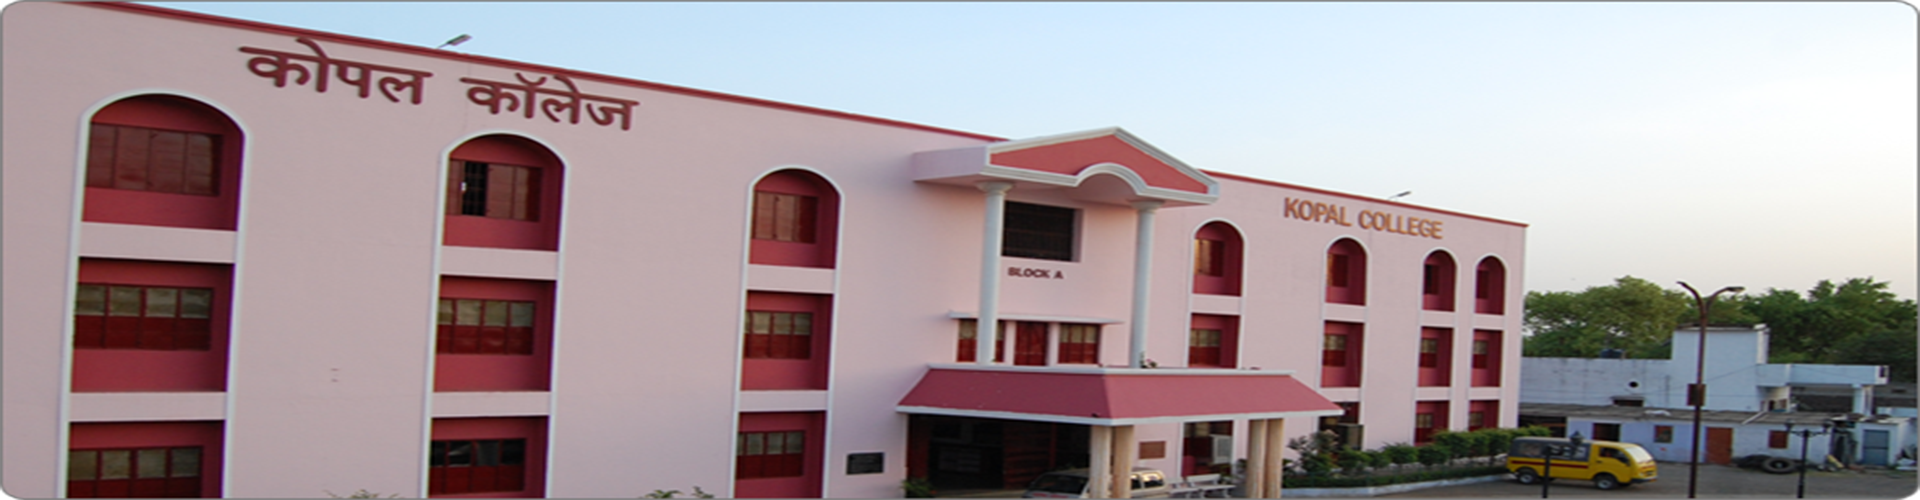 Kopal Group of Institute